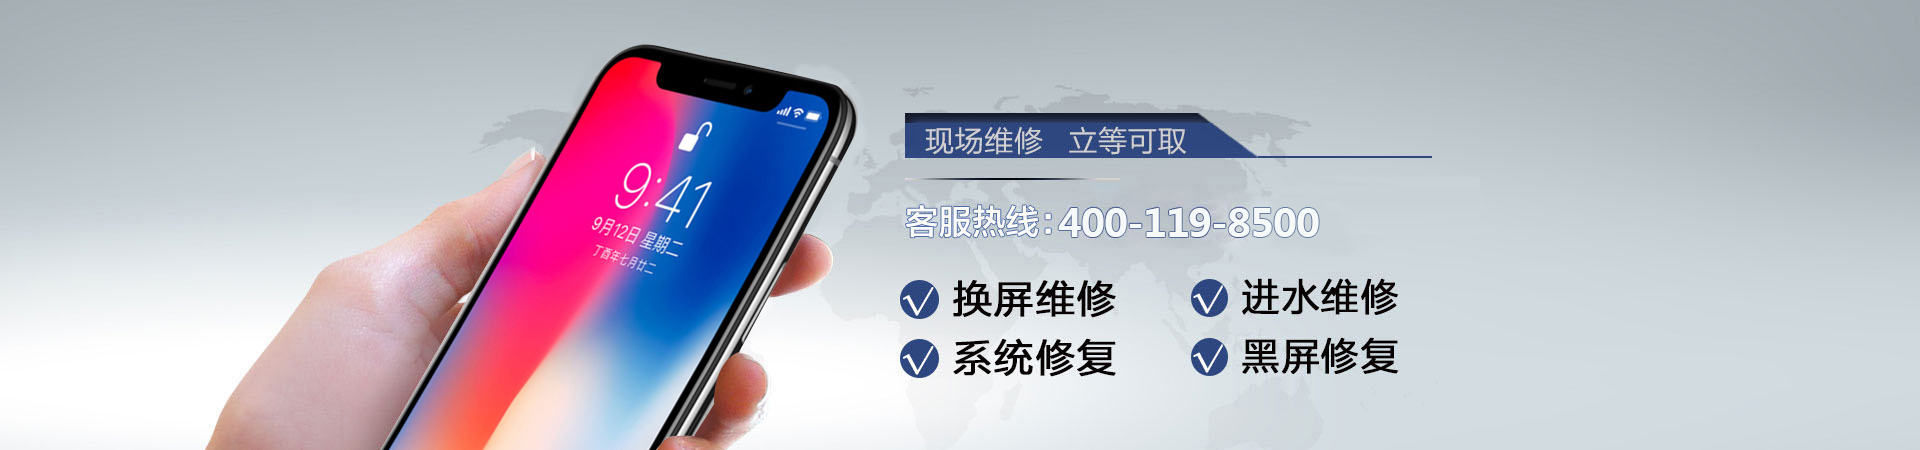 杭州苹果手机维修服务地址查询